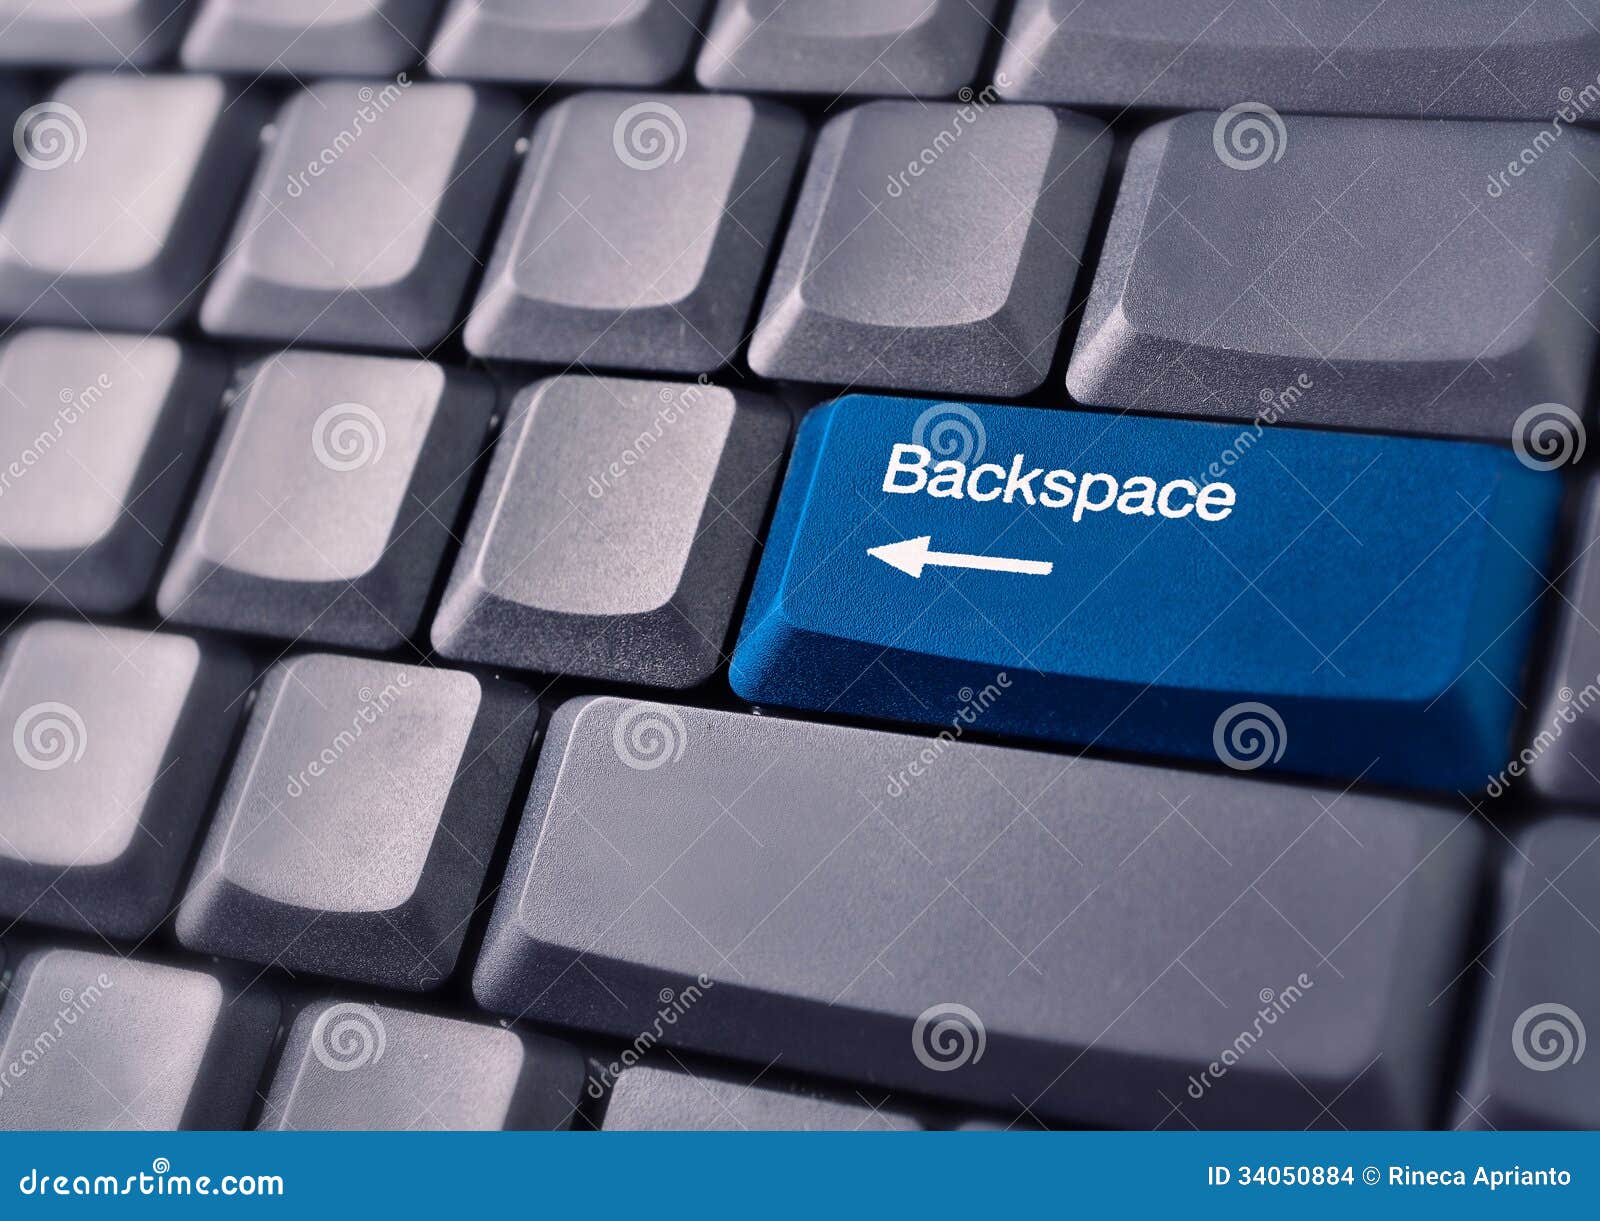 Ctrl backspace. Что такое Backspace на клавиатуре компьютера. Кнопка Backspace на клавиатуре. Что такое бэкспейс на клавиатуре компьютера. Клавиша бекспейс на клавиатуре.